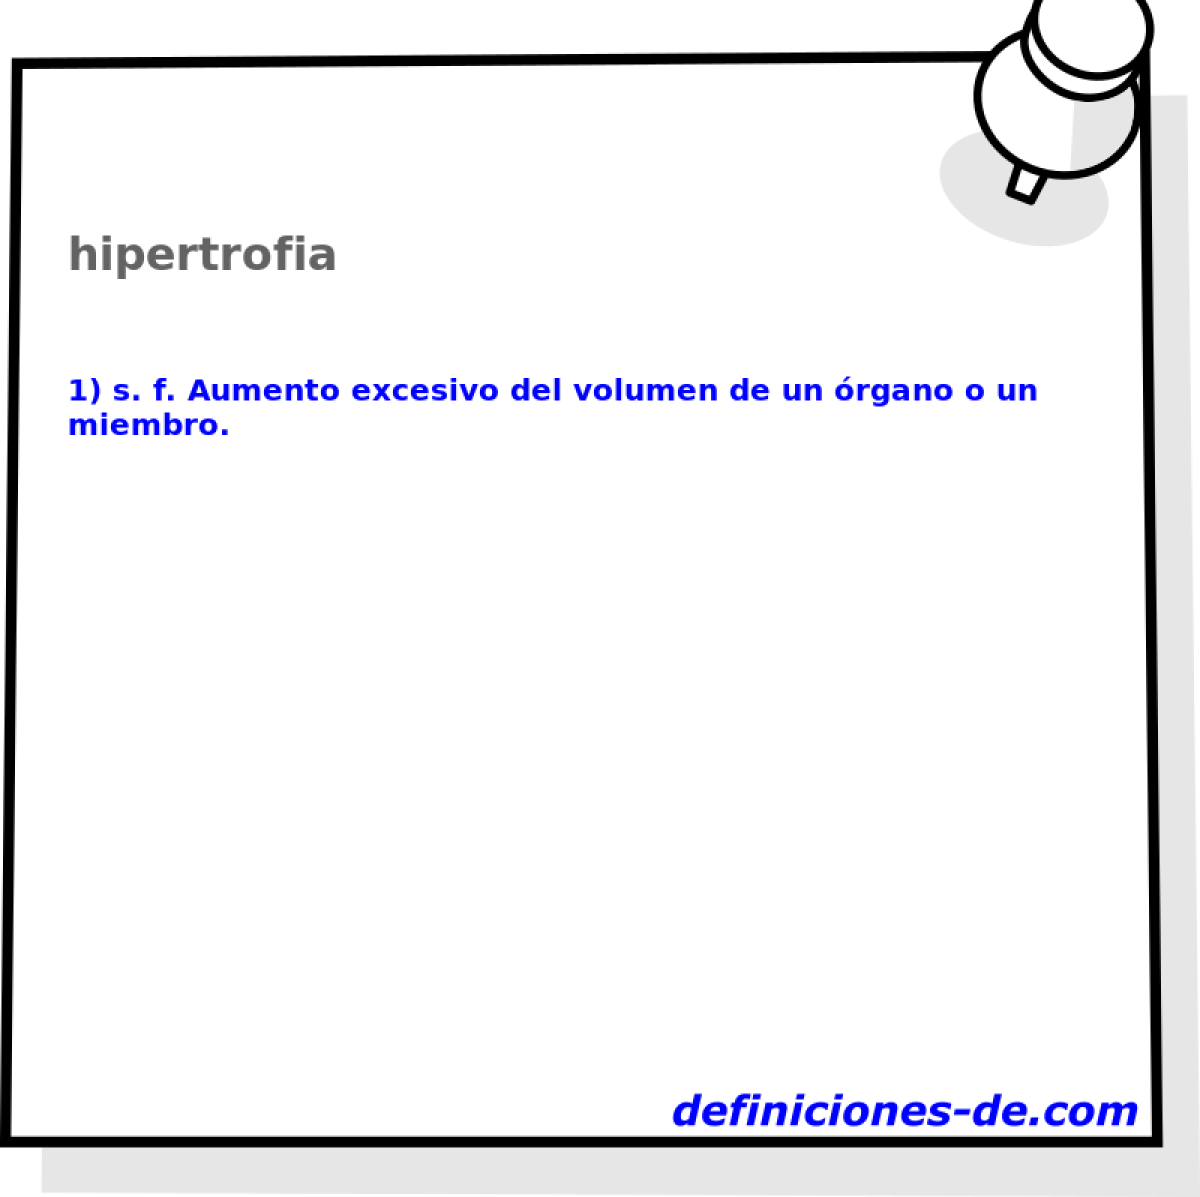 hipertrofia 